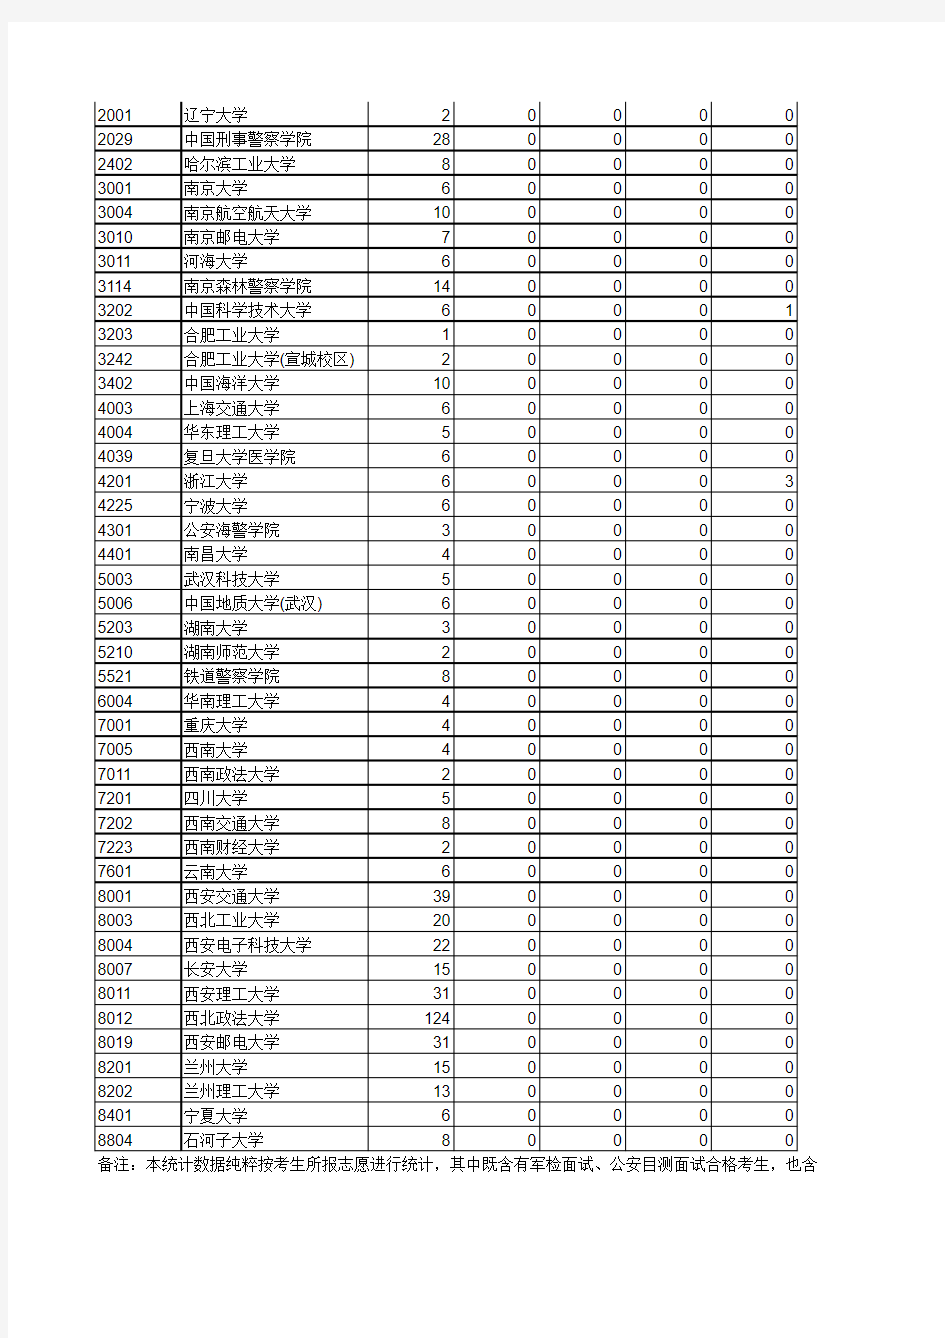 2014年陕西省普通高校招生第一志愿统计表(提前批本科A段)